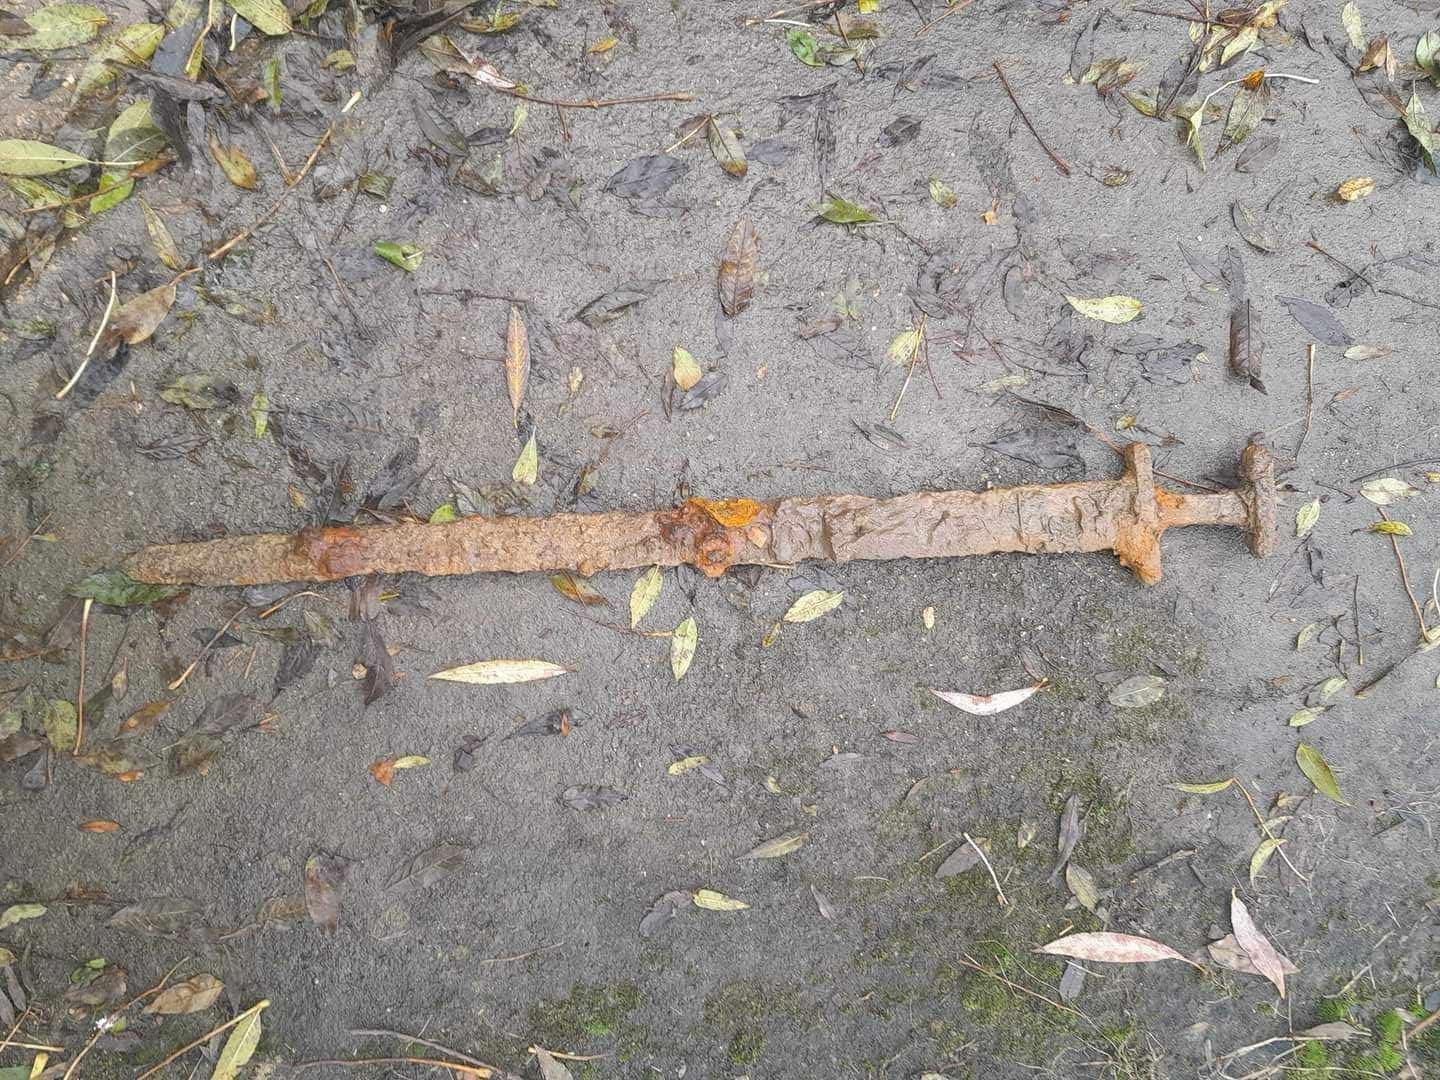 Мужчина нашел на дне реки неповрежденный меч викинга